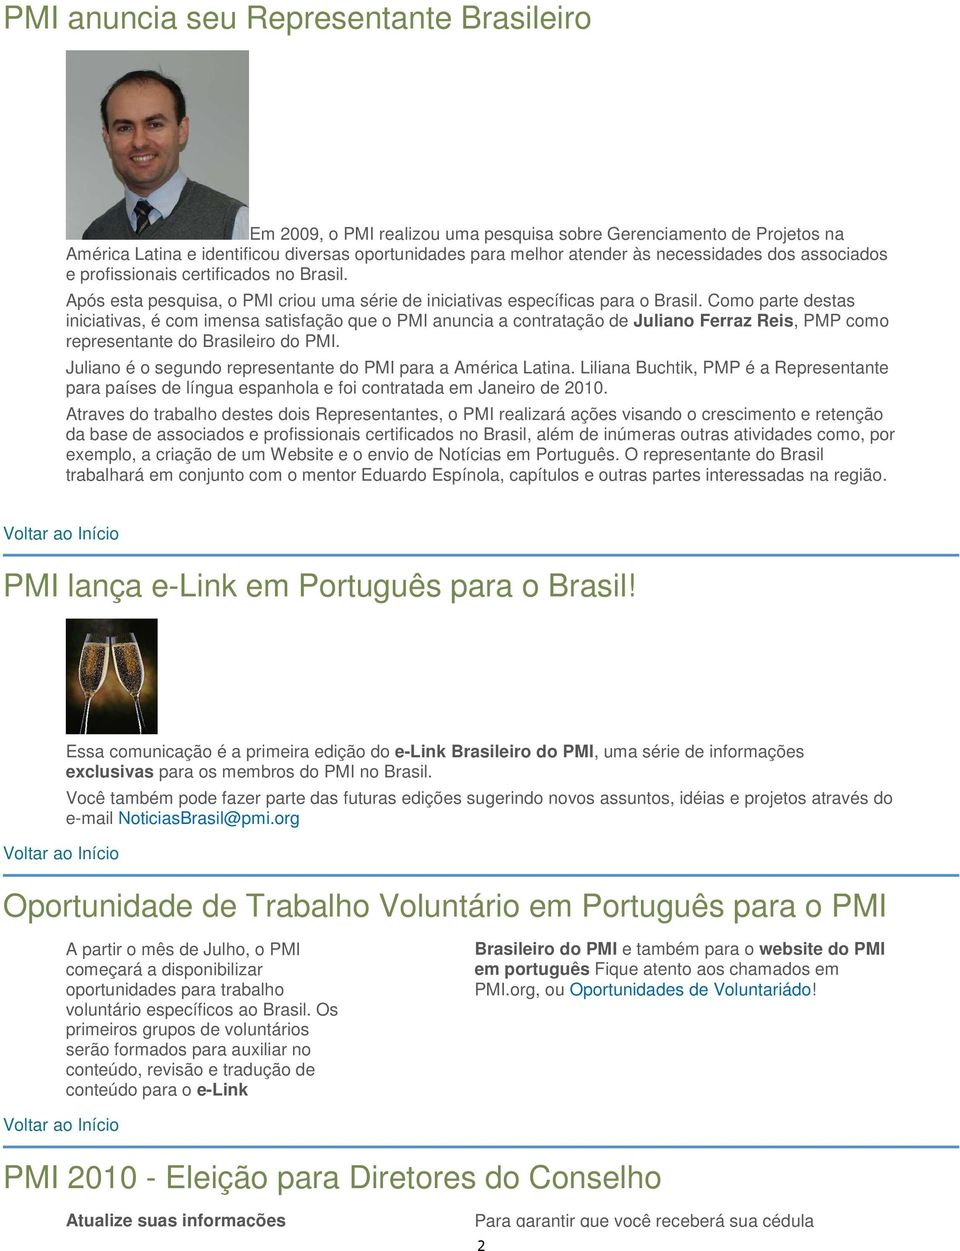 Como parte destas iniciativas, é com imensa satisfação que o PMI anuncia a contratação de Juliano Ferraz Reis, PMP como representante do Brasileiro do PMI.